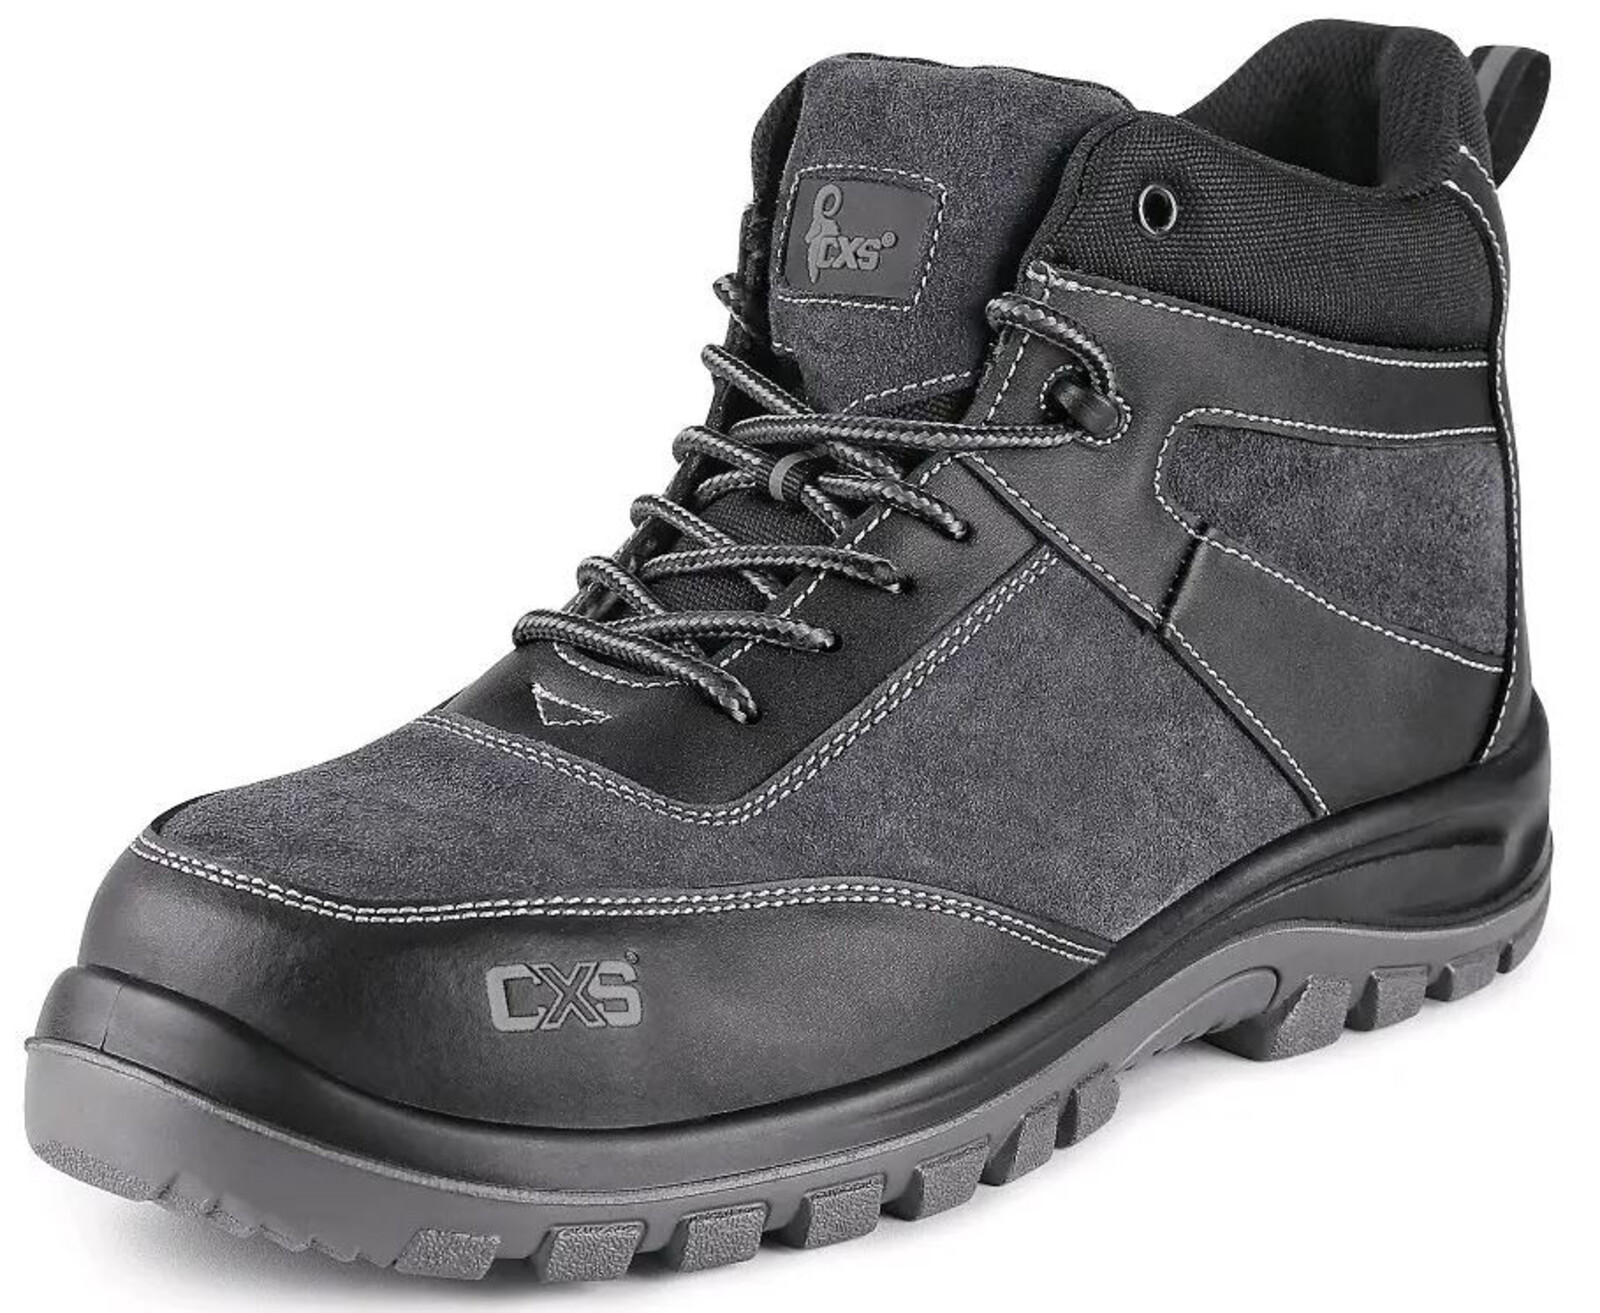 Pracovná členková obuv CXS Profit Win O1 FO SRC - veľkosť: 48, farba: čierna/sivá